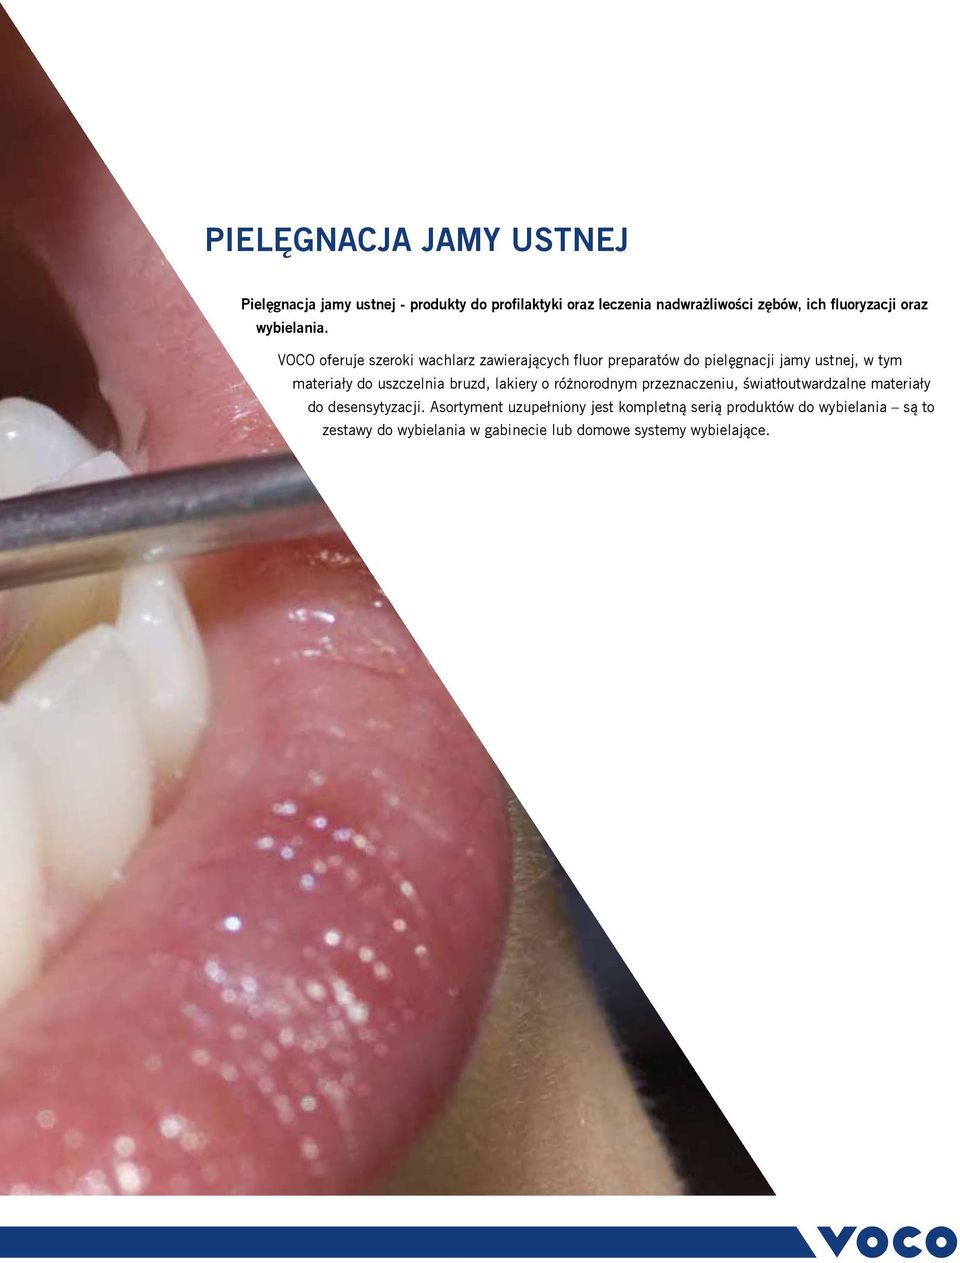 VOCO oferuje szeroki wachlarz zawierających fluor preparatów do pielęgnacji jamy ustnej, w tym materiały do uszczelnia